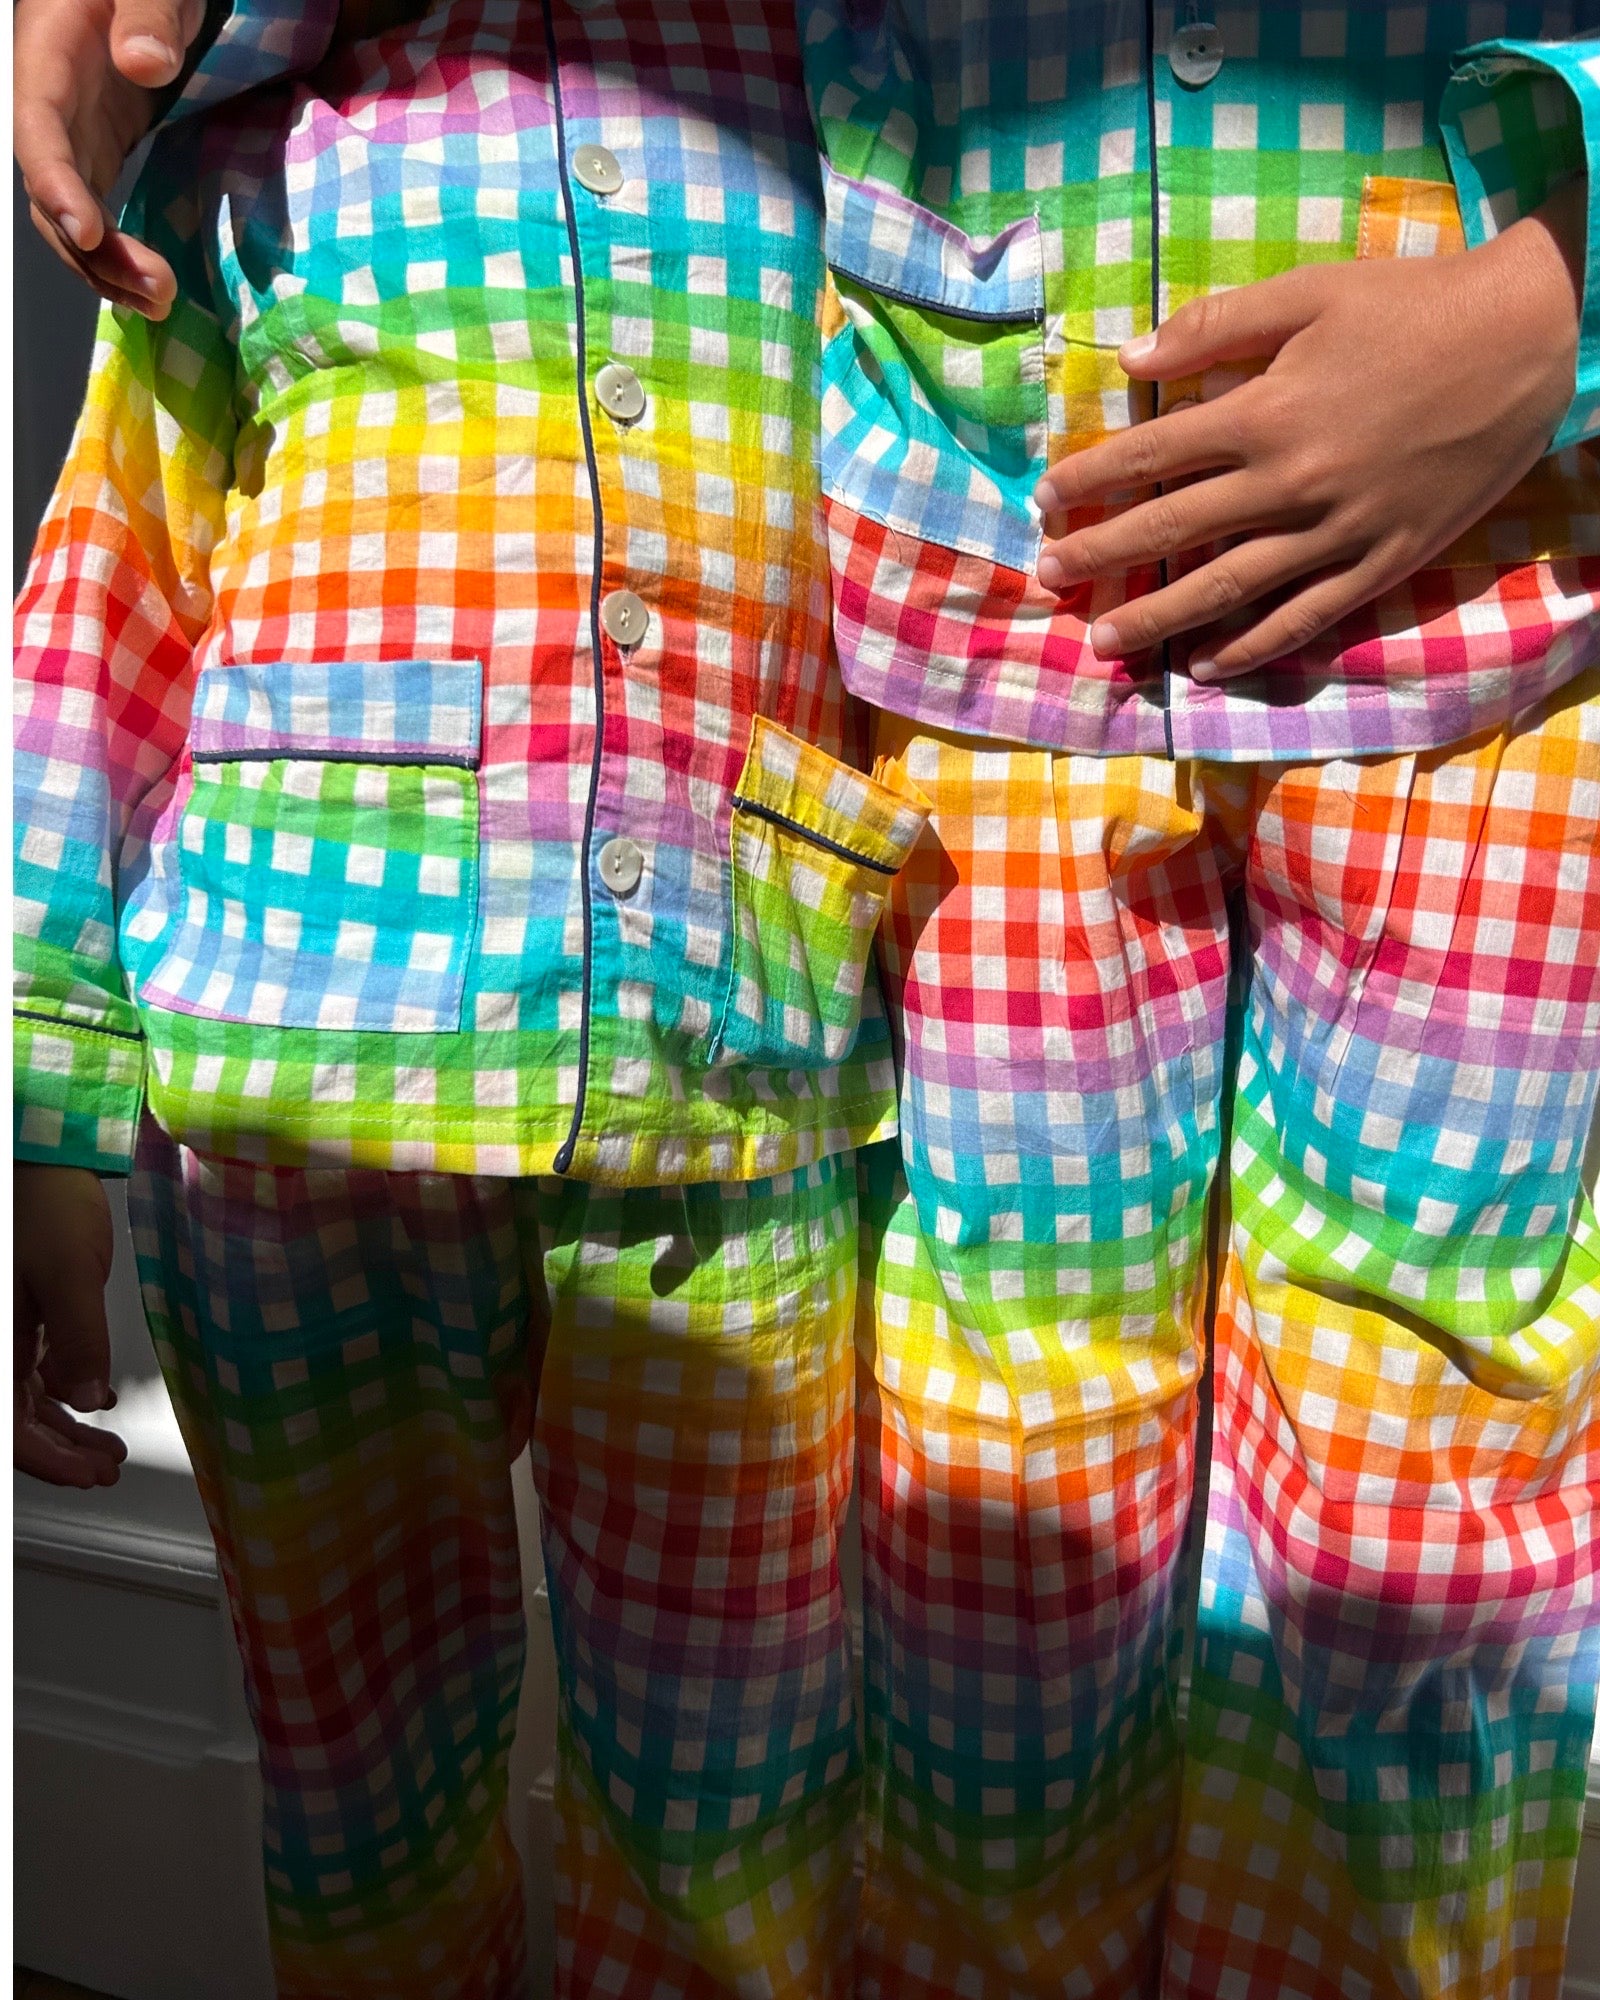 Multicolored Children's Pajamas